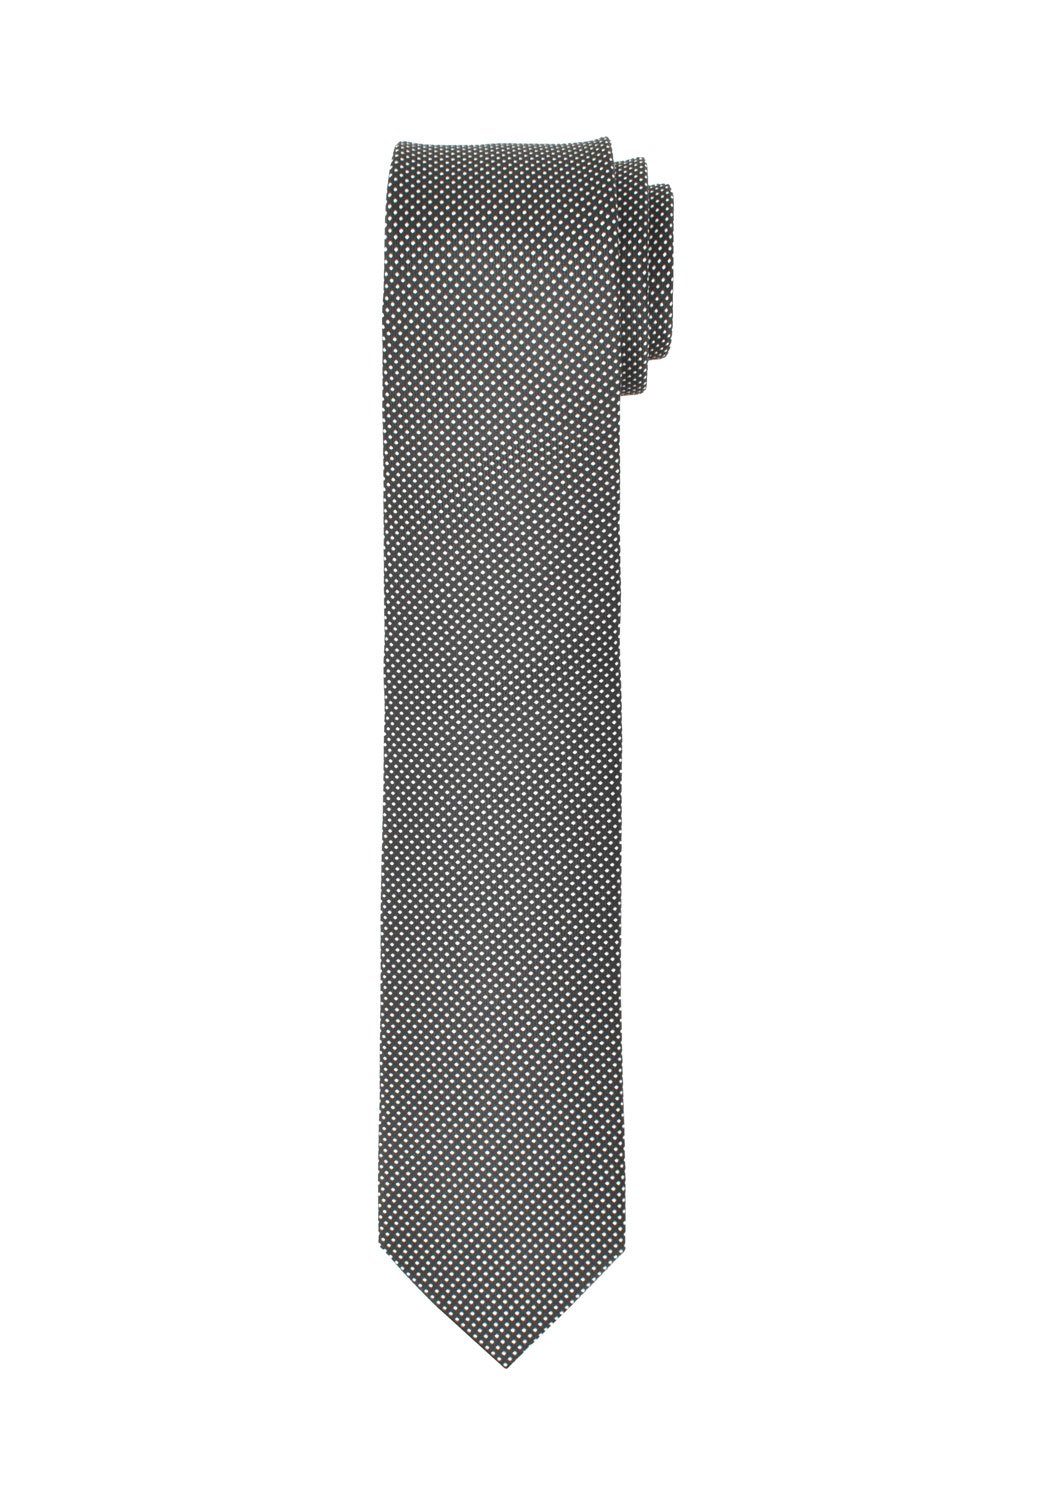 - MARVELIS cm - Krawatte - 6,5 Schwarz/Weiß Gepunktet Krawatte